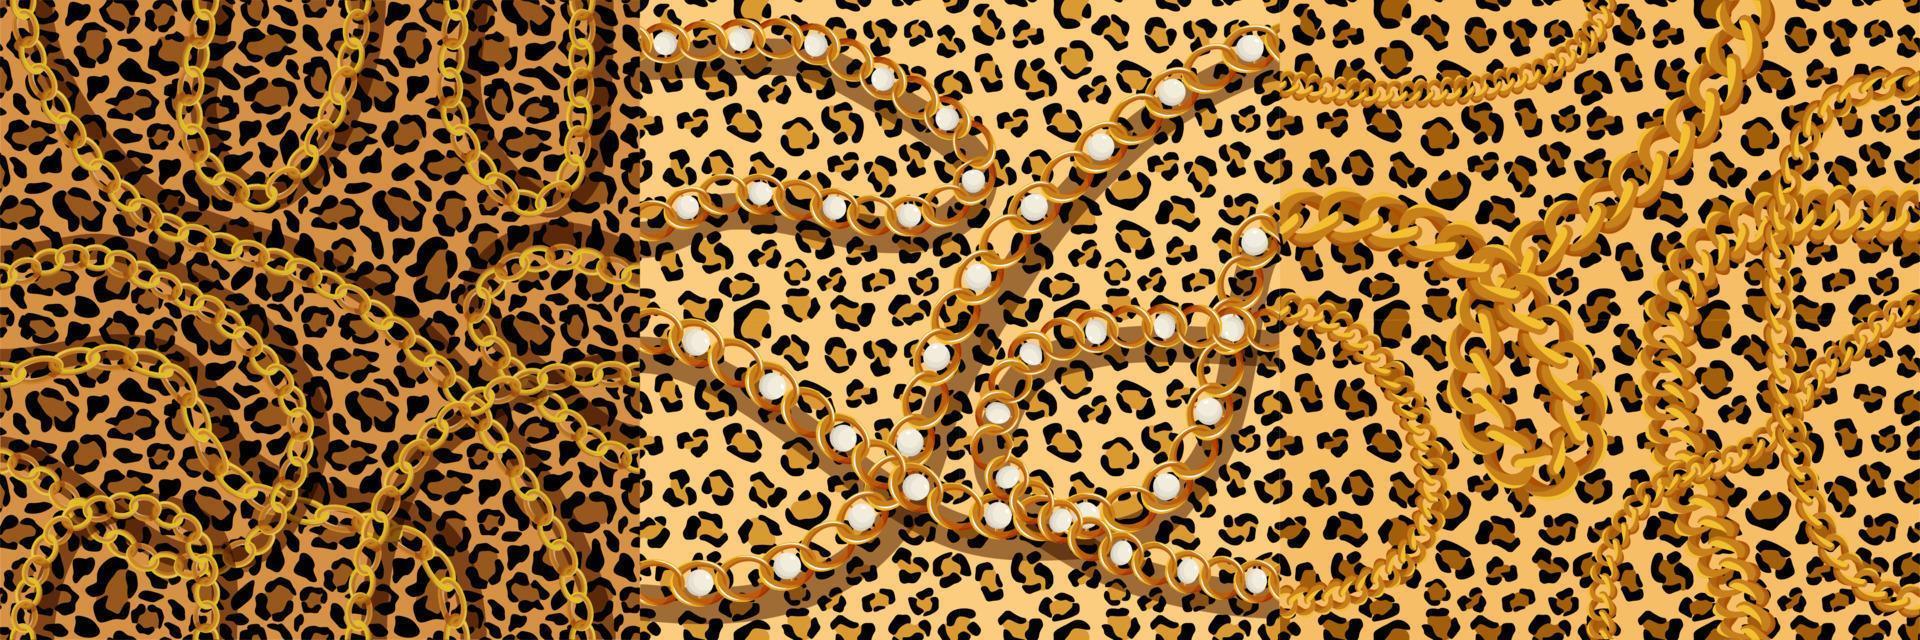 leopardenmaßwerk mit goldketten und nahtlosem muster der perlen. puma-gelbe flecken mit schwarzen jaguar-schemaumrissen in geparden-vektorfarbe. vektor